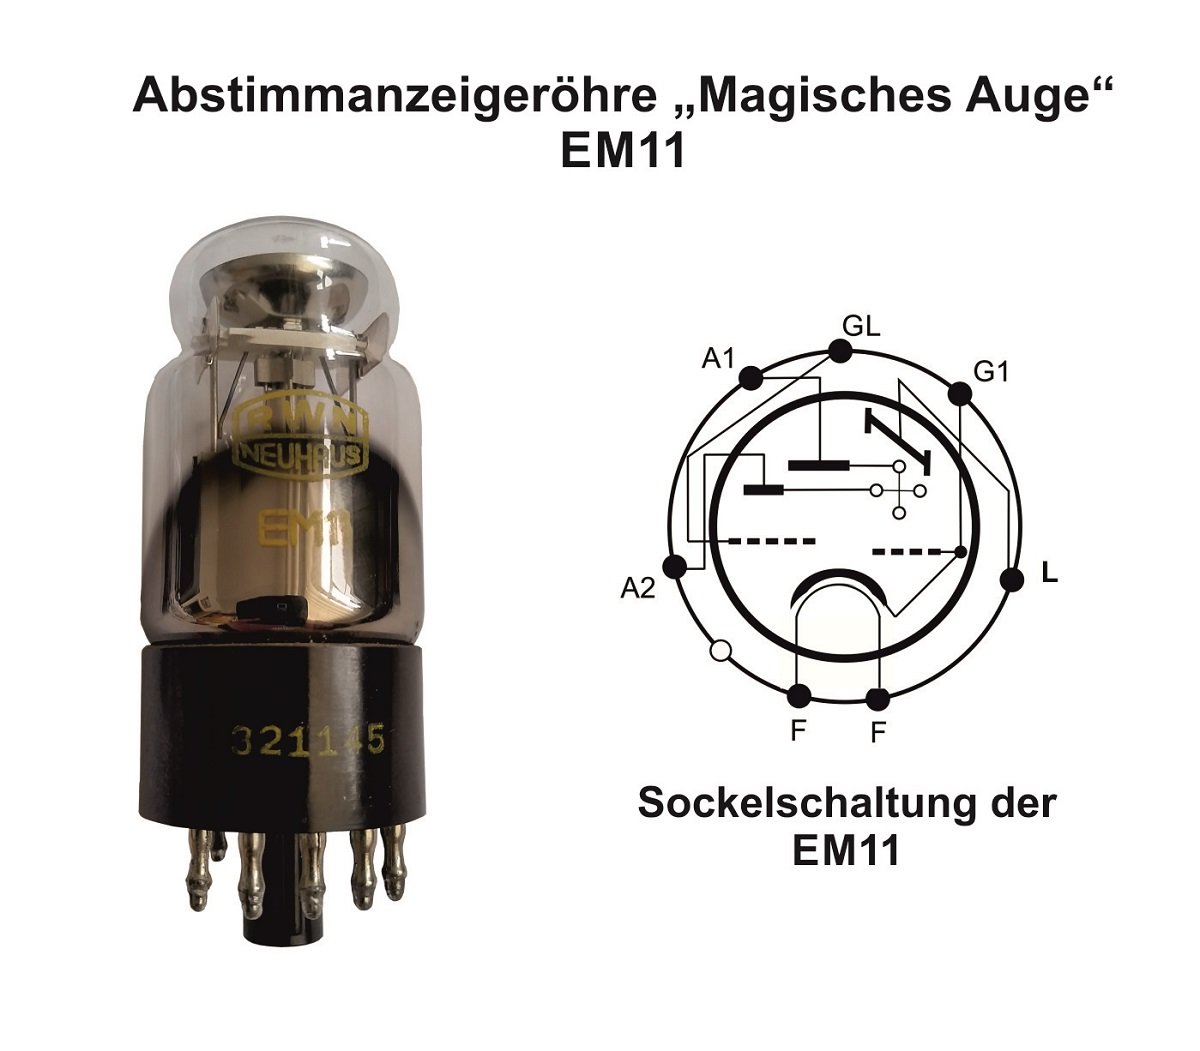 Abstimmanzeigeröhre "Magisches Auge" EM11 (Industriemuseum Region Teltow CC BY-NC-SA)